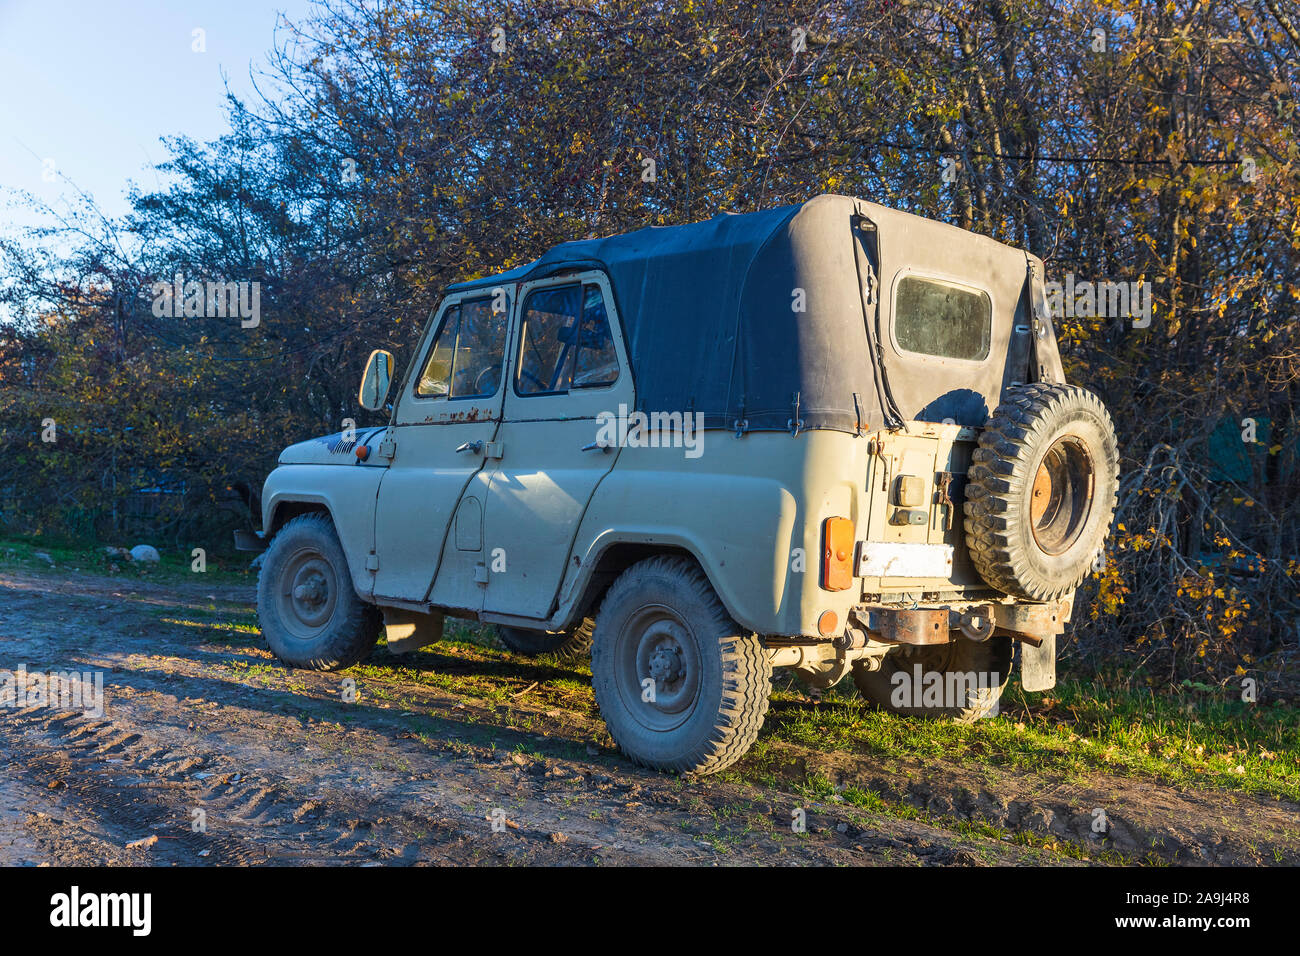 Azerbaijan, Shabran - November 8, 2019: Soviet UAZ SUV on a mountain road Stock Photo